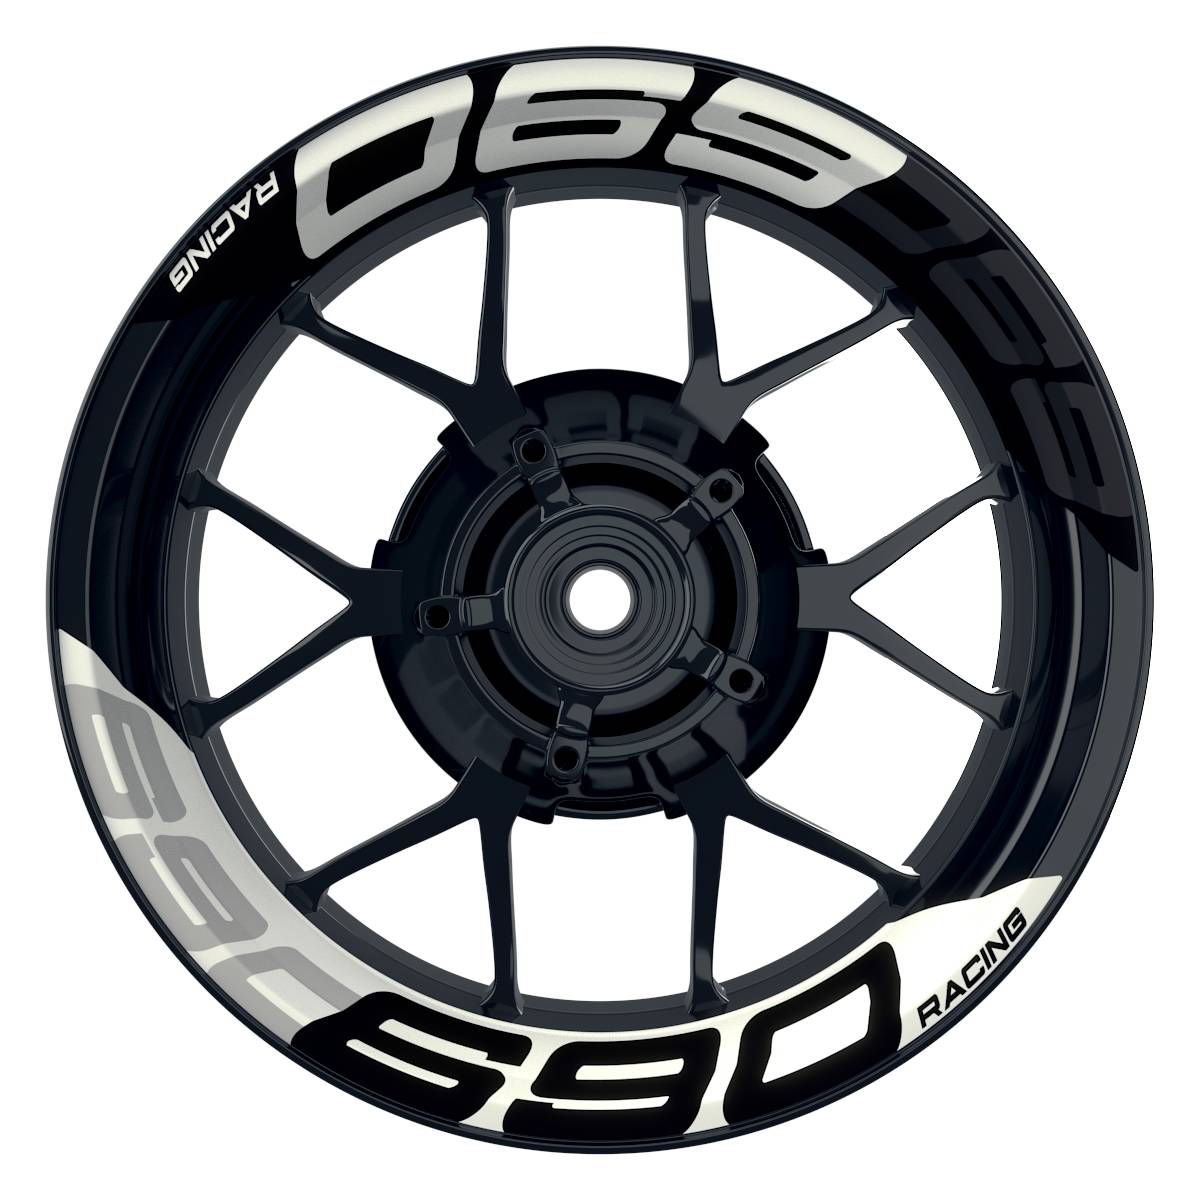 Wheelsticker Felgenaufkleber KTM Racing 690 halb halb V2 schwarz weiss Frontansicht